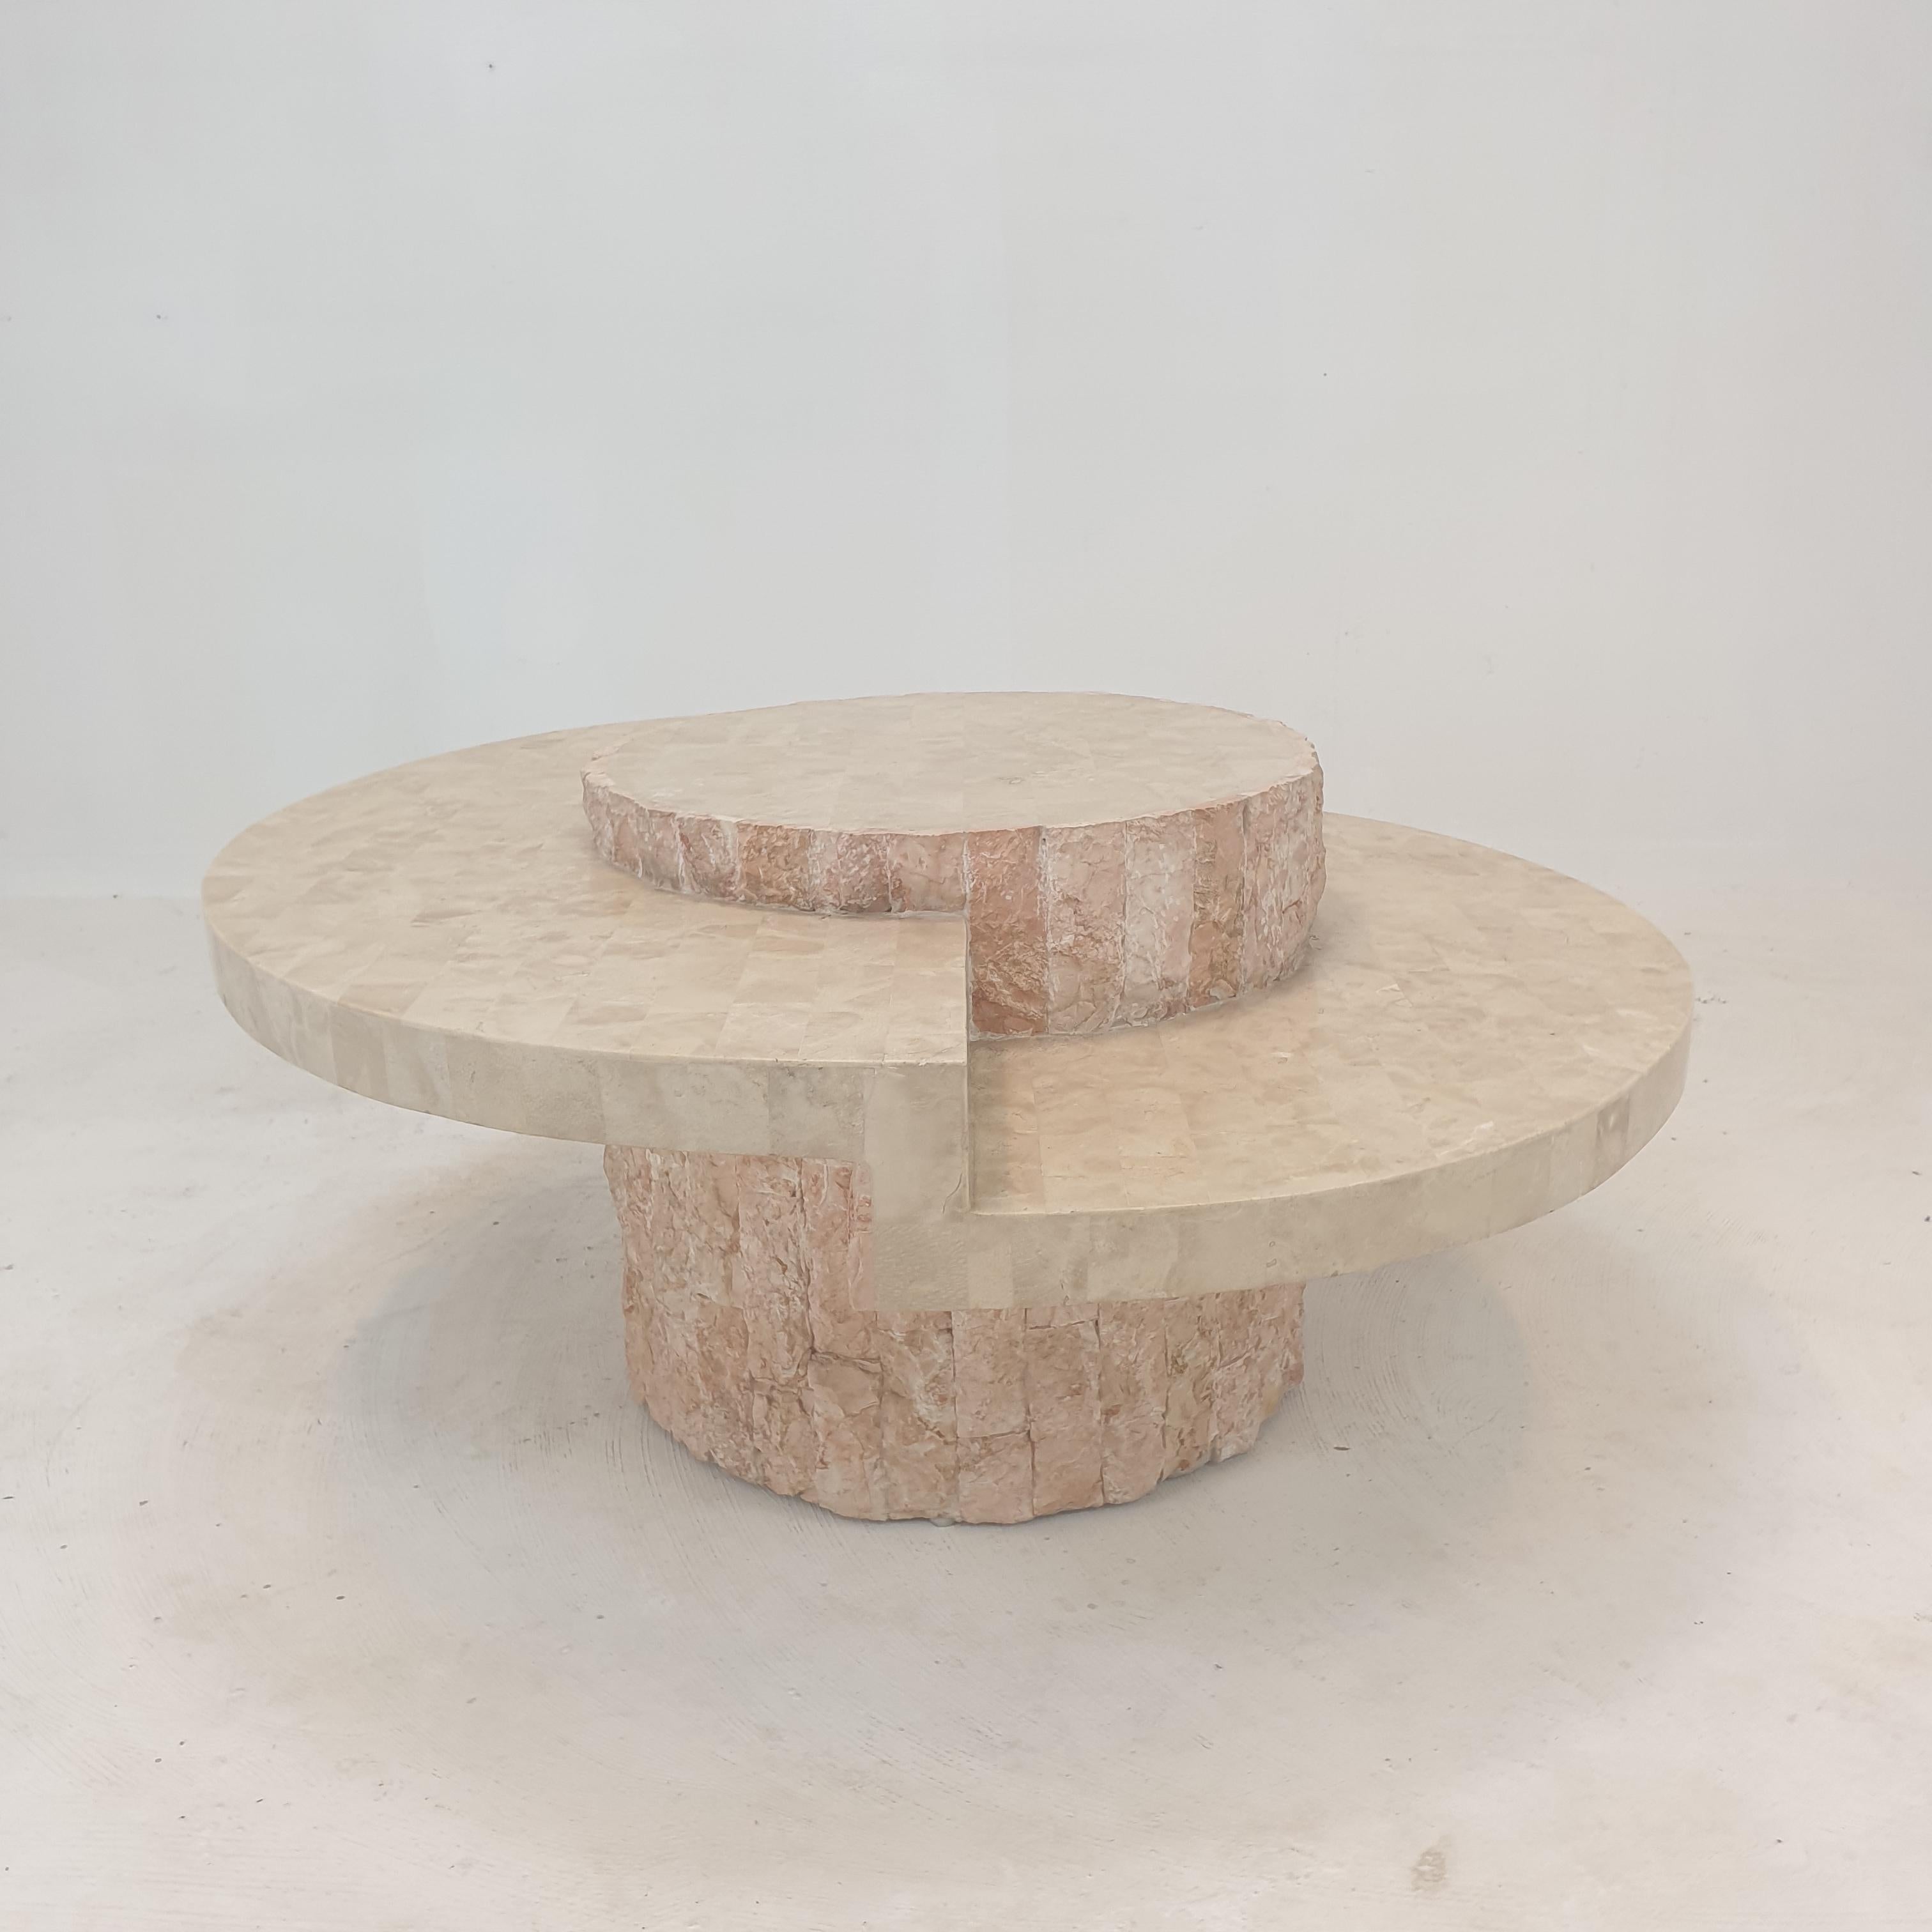 Très belle table basse ou d'appoint par Magnussen Ponte, années 1980.

Cette table étonnante est fabriquée en pierre de Mactan ou en pierre fossile, un motif de brique à bord brut.
Le poids est d'environ 25 kg (55 lbs).

Nous travaillons avec